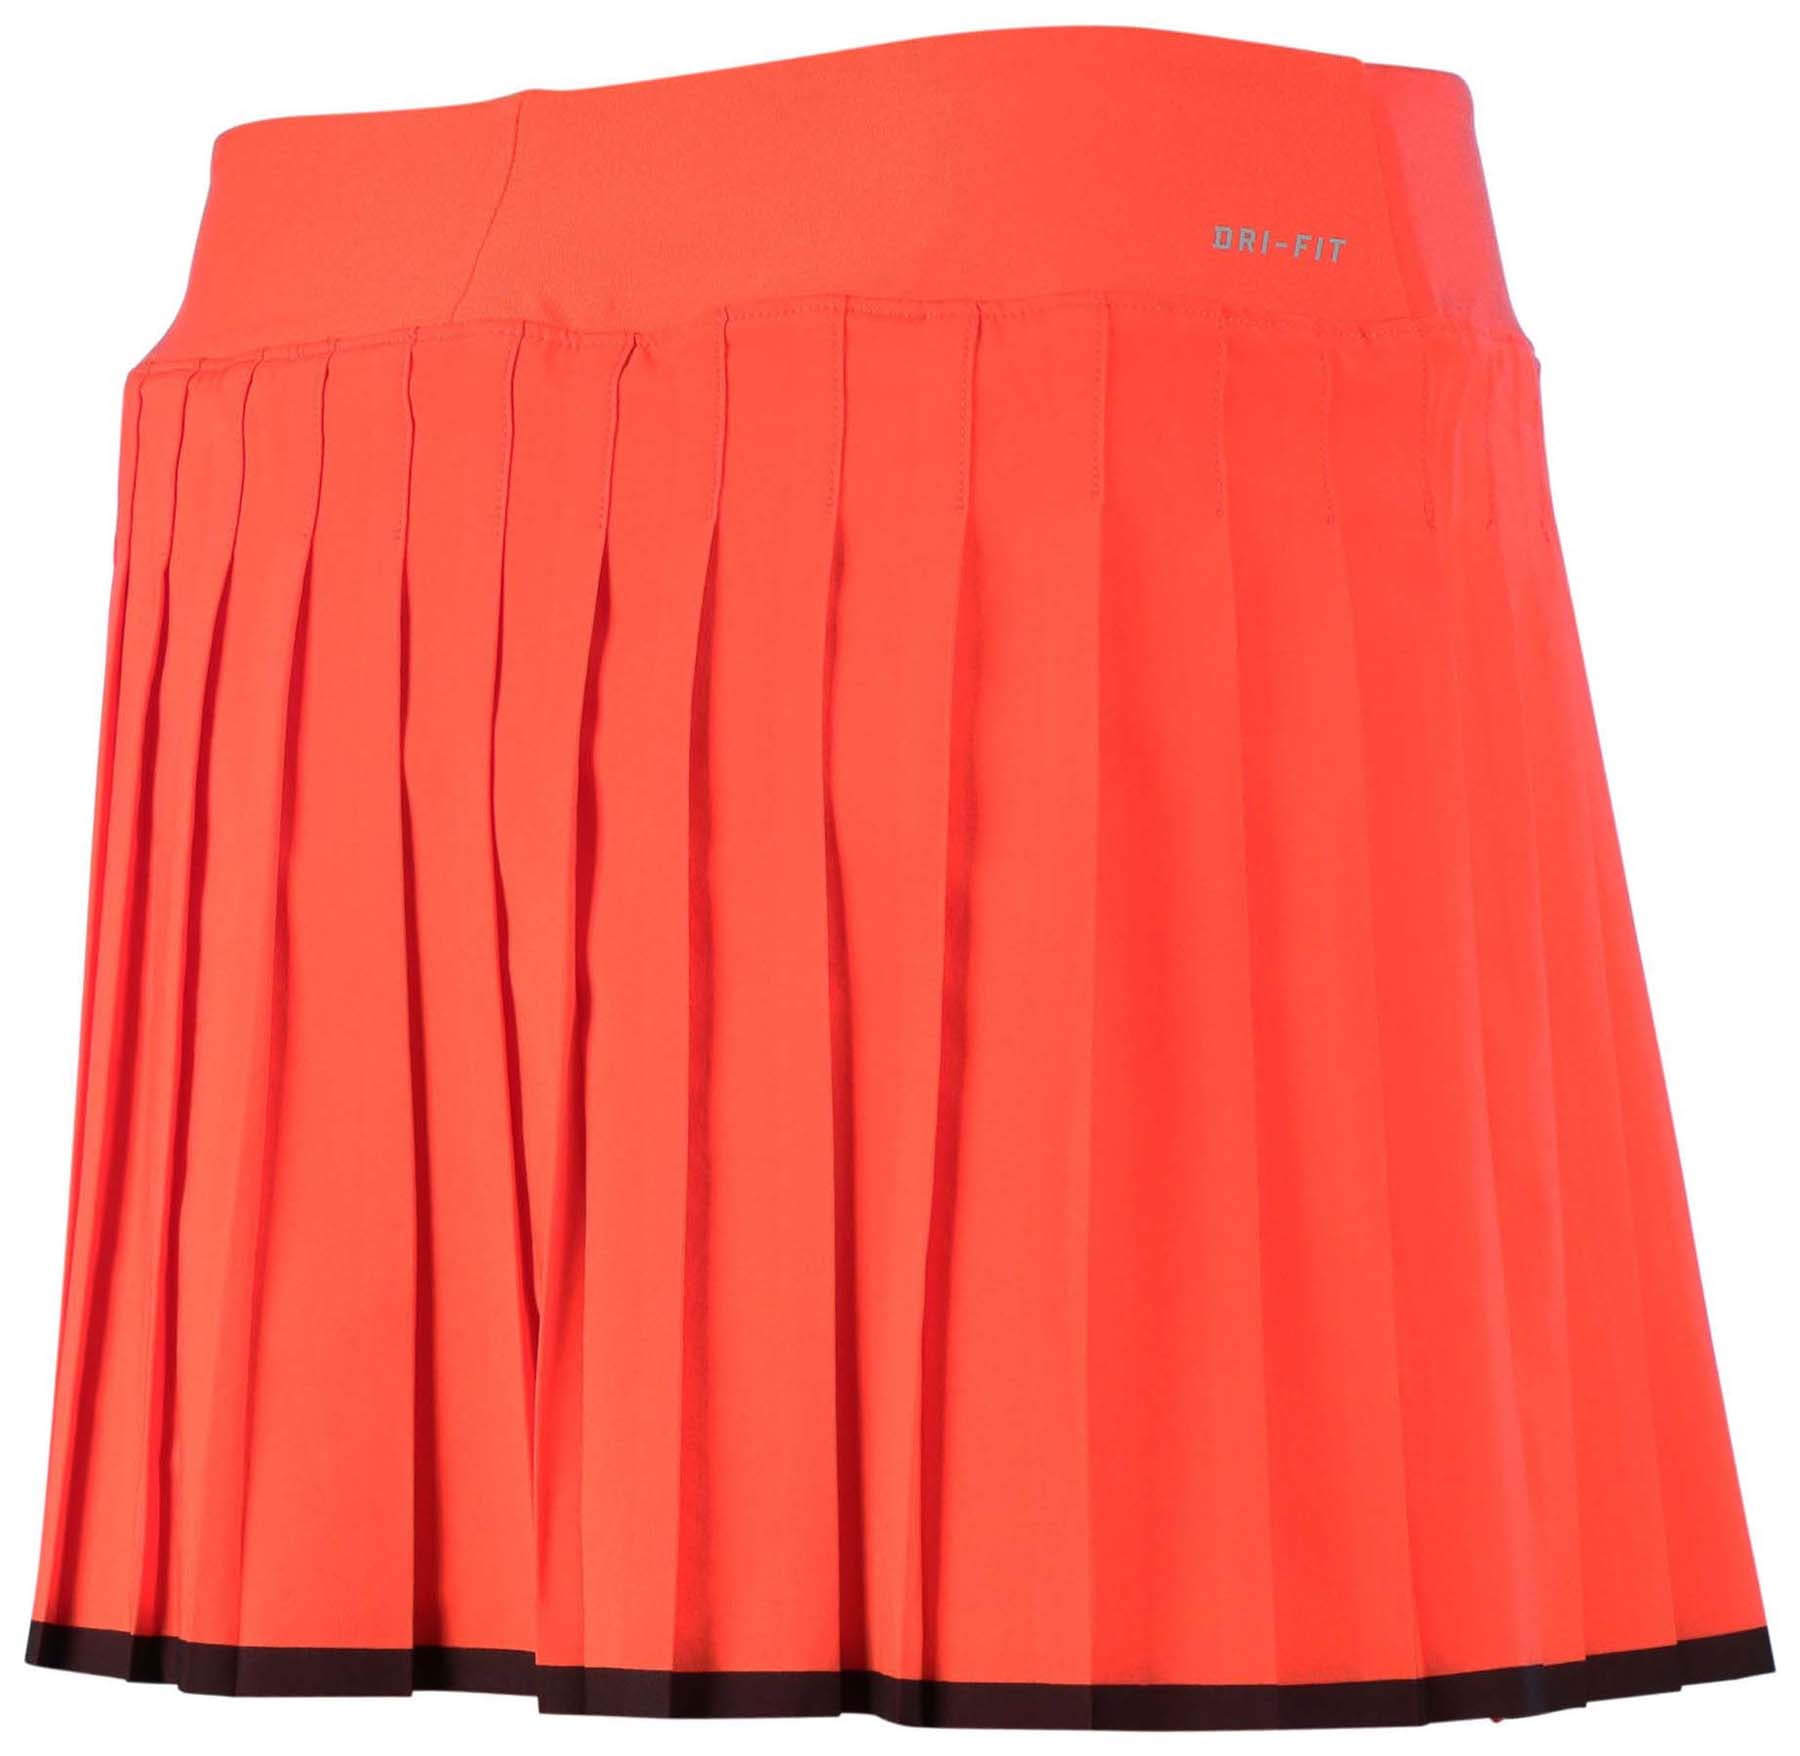 Nike Women's Tennis Skirt-Light Crimson/Black - Walmart.com